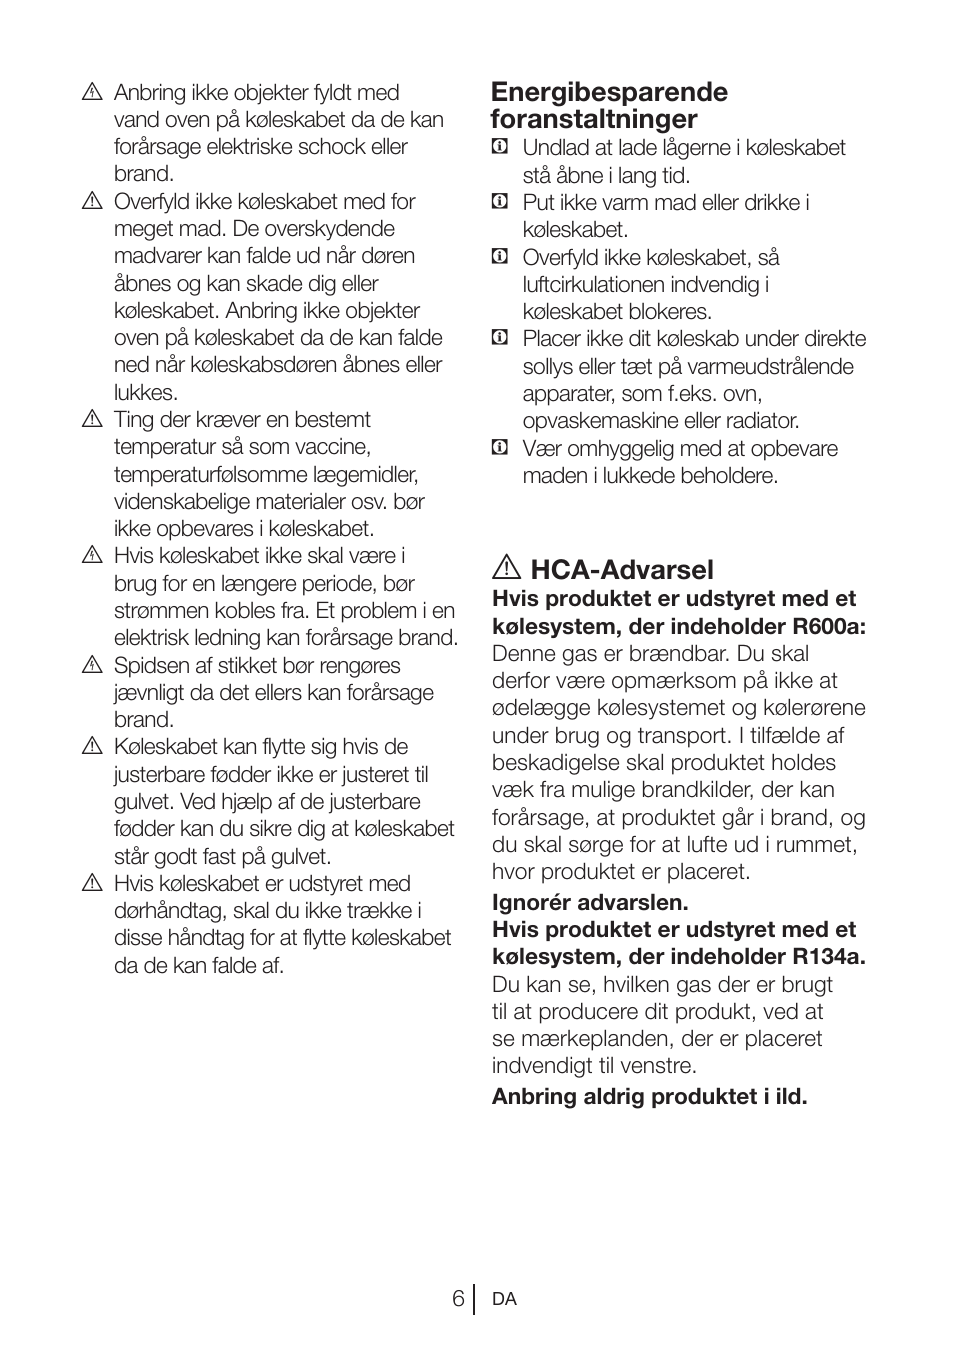 Hca-advarsel, Energibesparende foranstaltninger | Blomberg DNE 9840 A+ User  Manual | Page 64 / 95 | Original mode